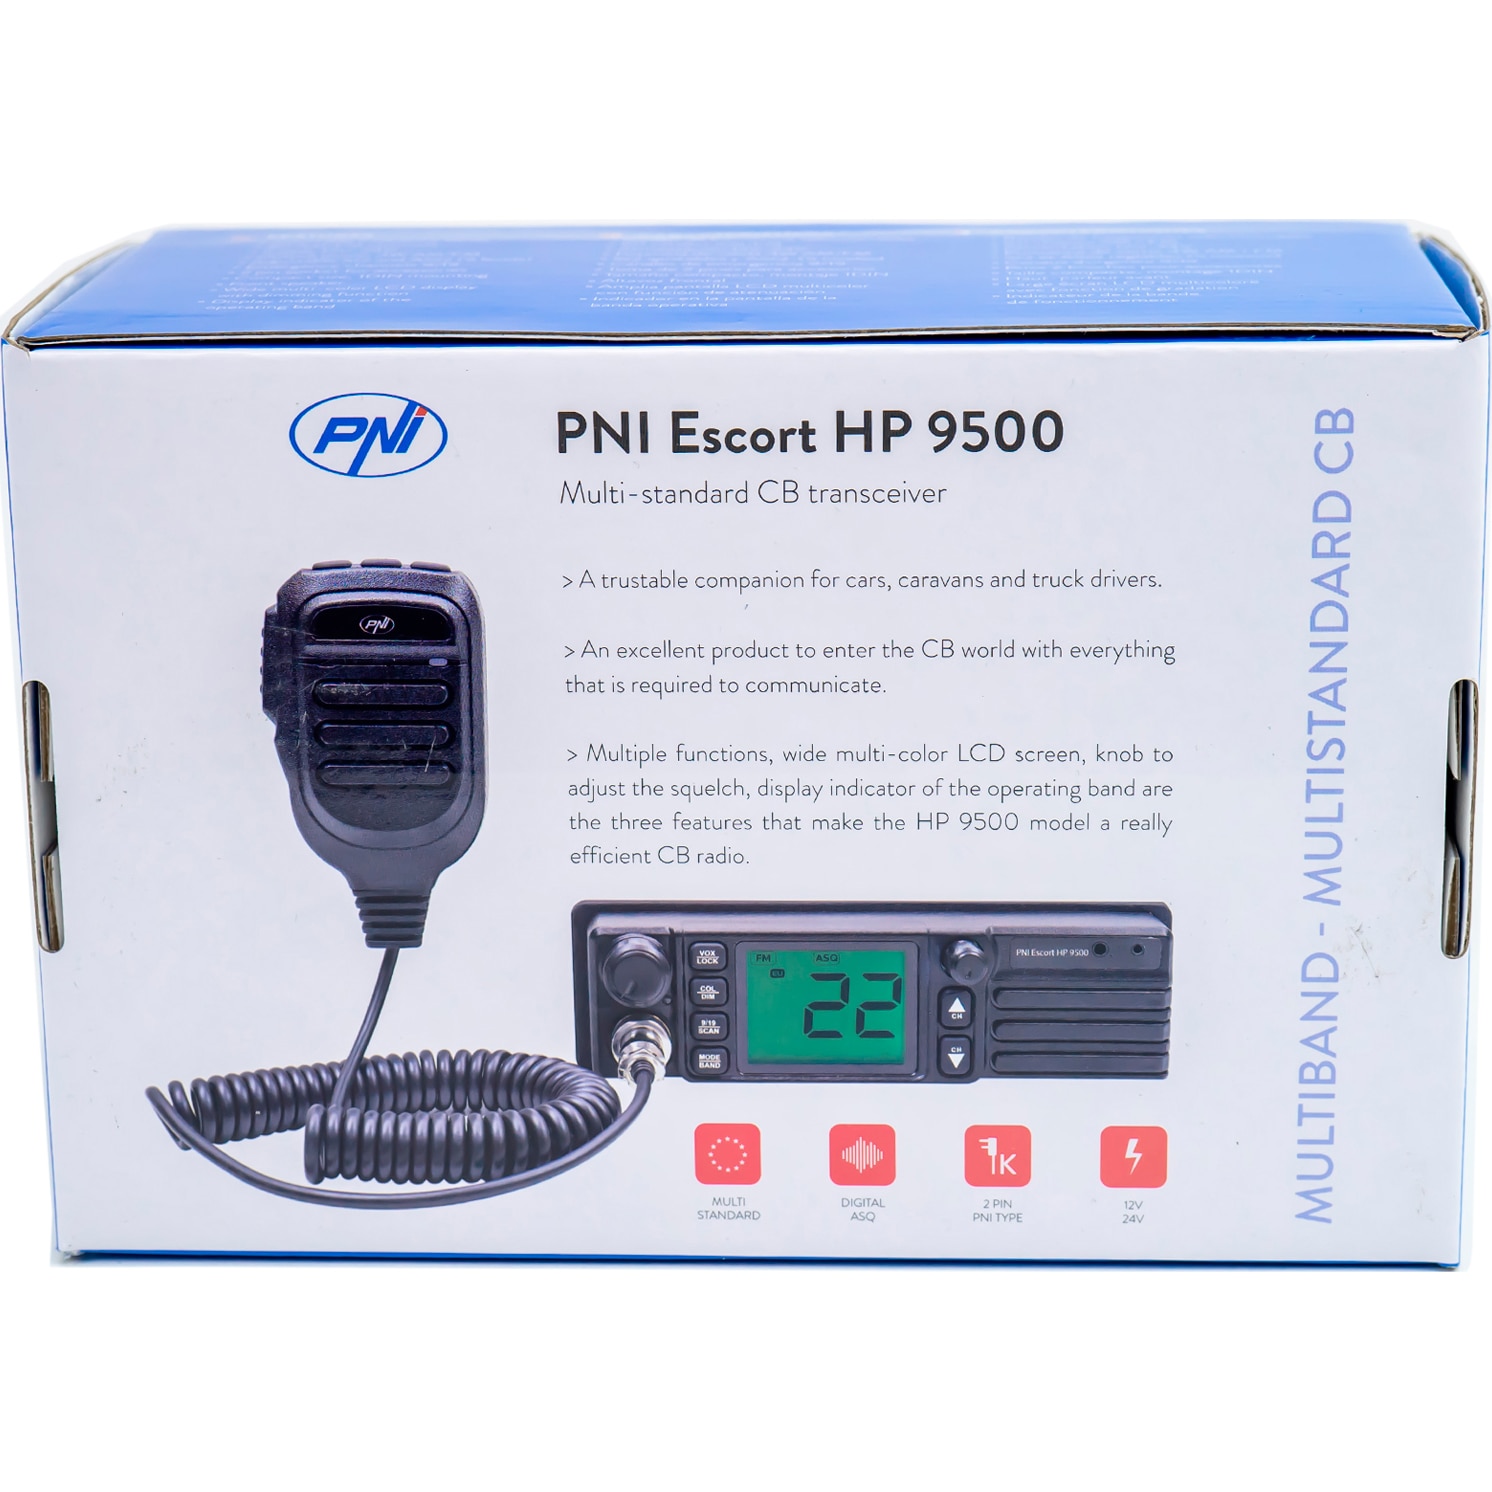 PNI Escort HP 8500 émetteur-récepteur CB avec radio FM + MP3